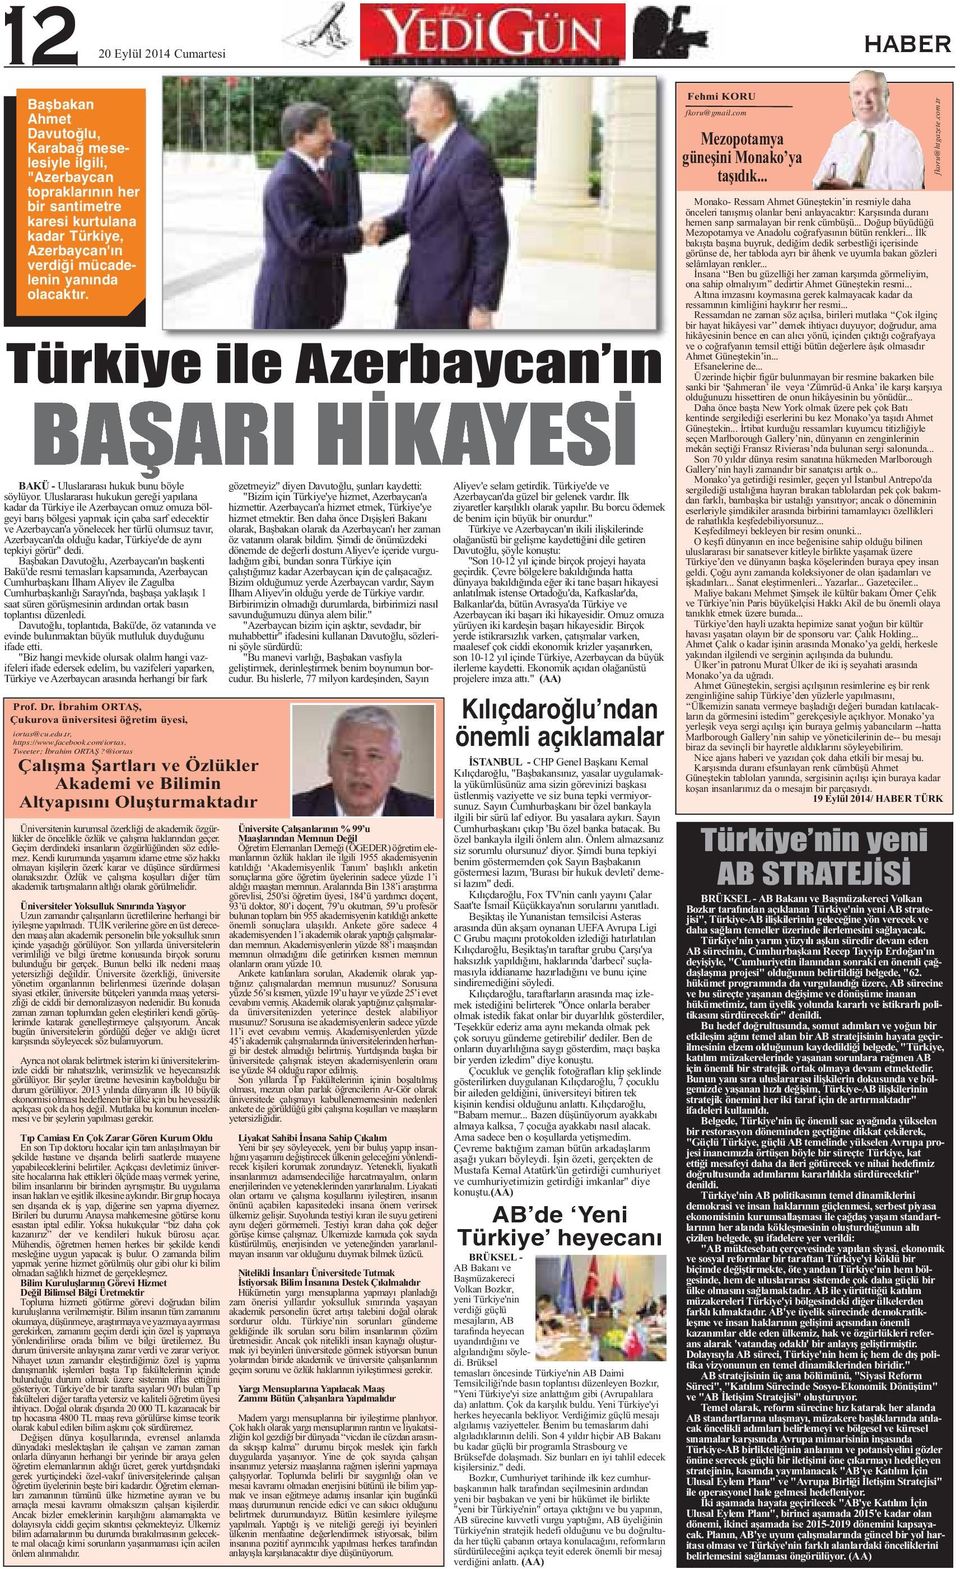 Uluslararası hukukun gereği yapılana kadar da Türkiye ile Azerbaycan omuz omuza bölgeyi barış bölgesi yapmak için çaba sarf edecektir ve Azerbaycan'a yönelecek her türlü olumsuz tavır, Azerbaycan'da